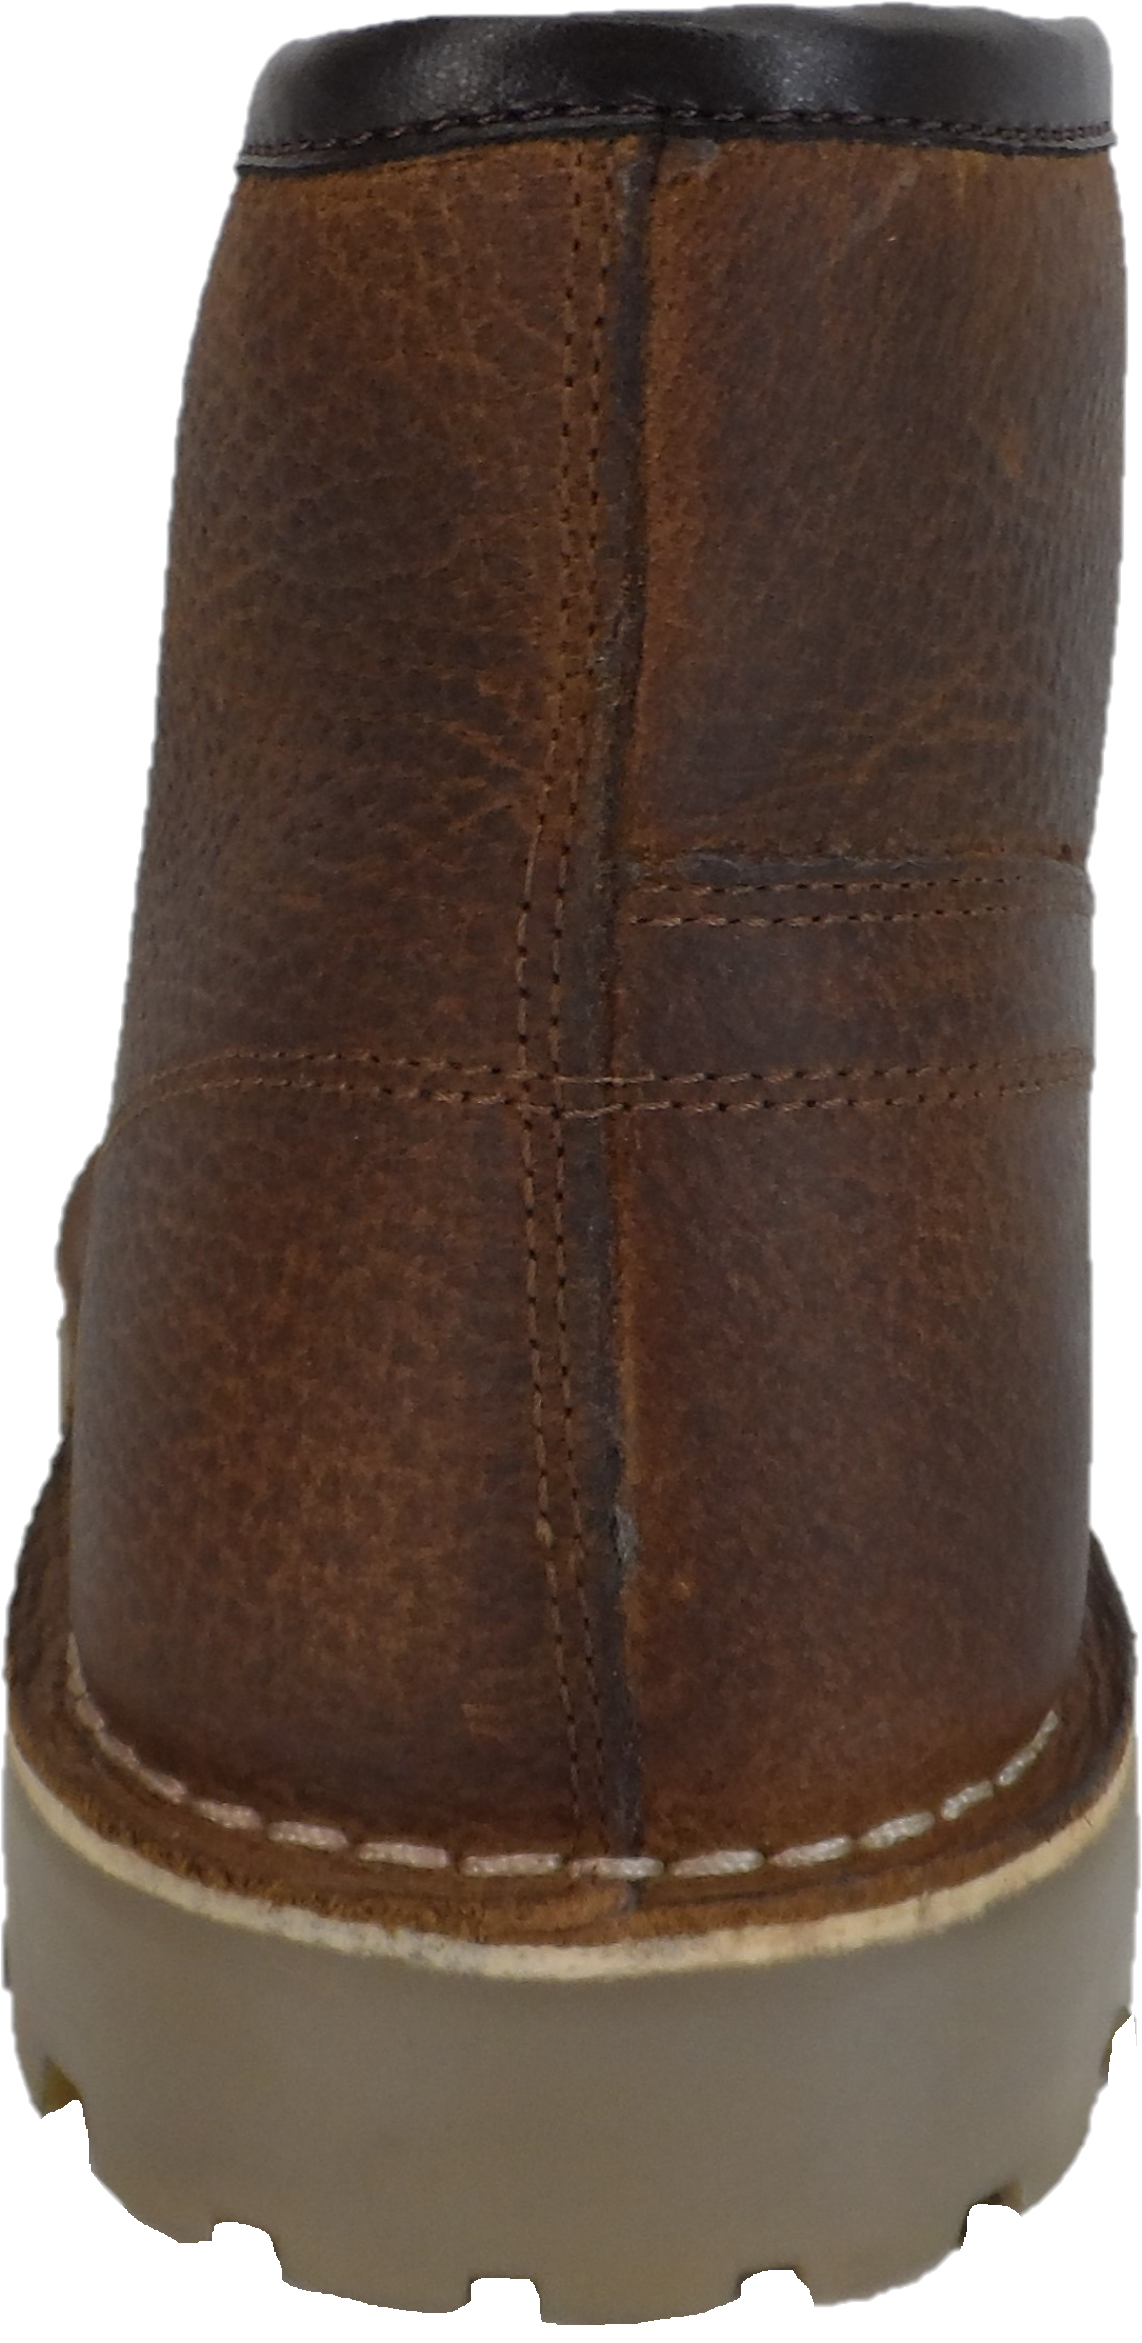 Monkey Boots originales de cuero de grano marrón estilo años 70